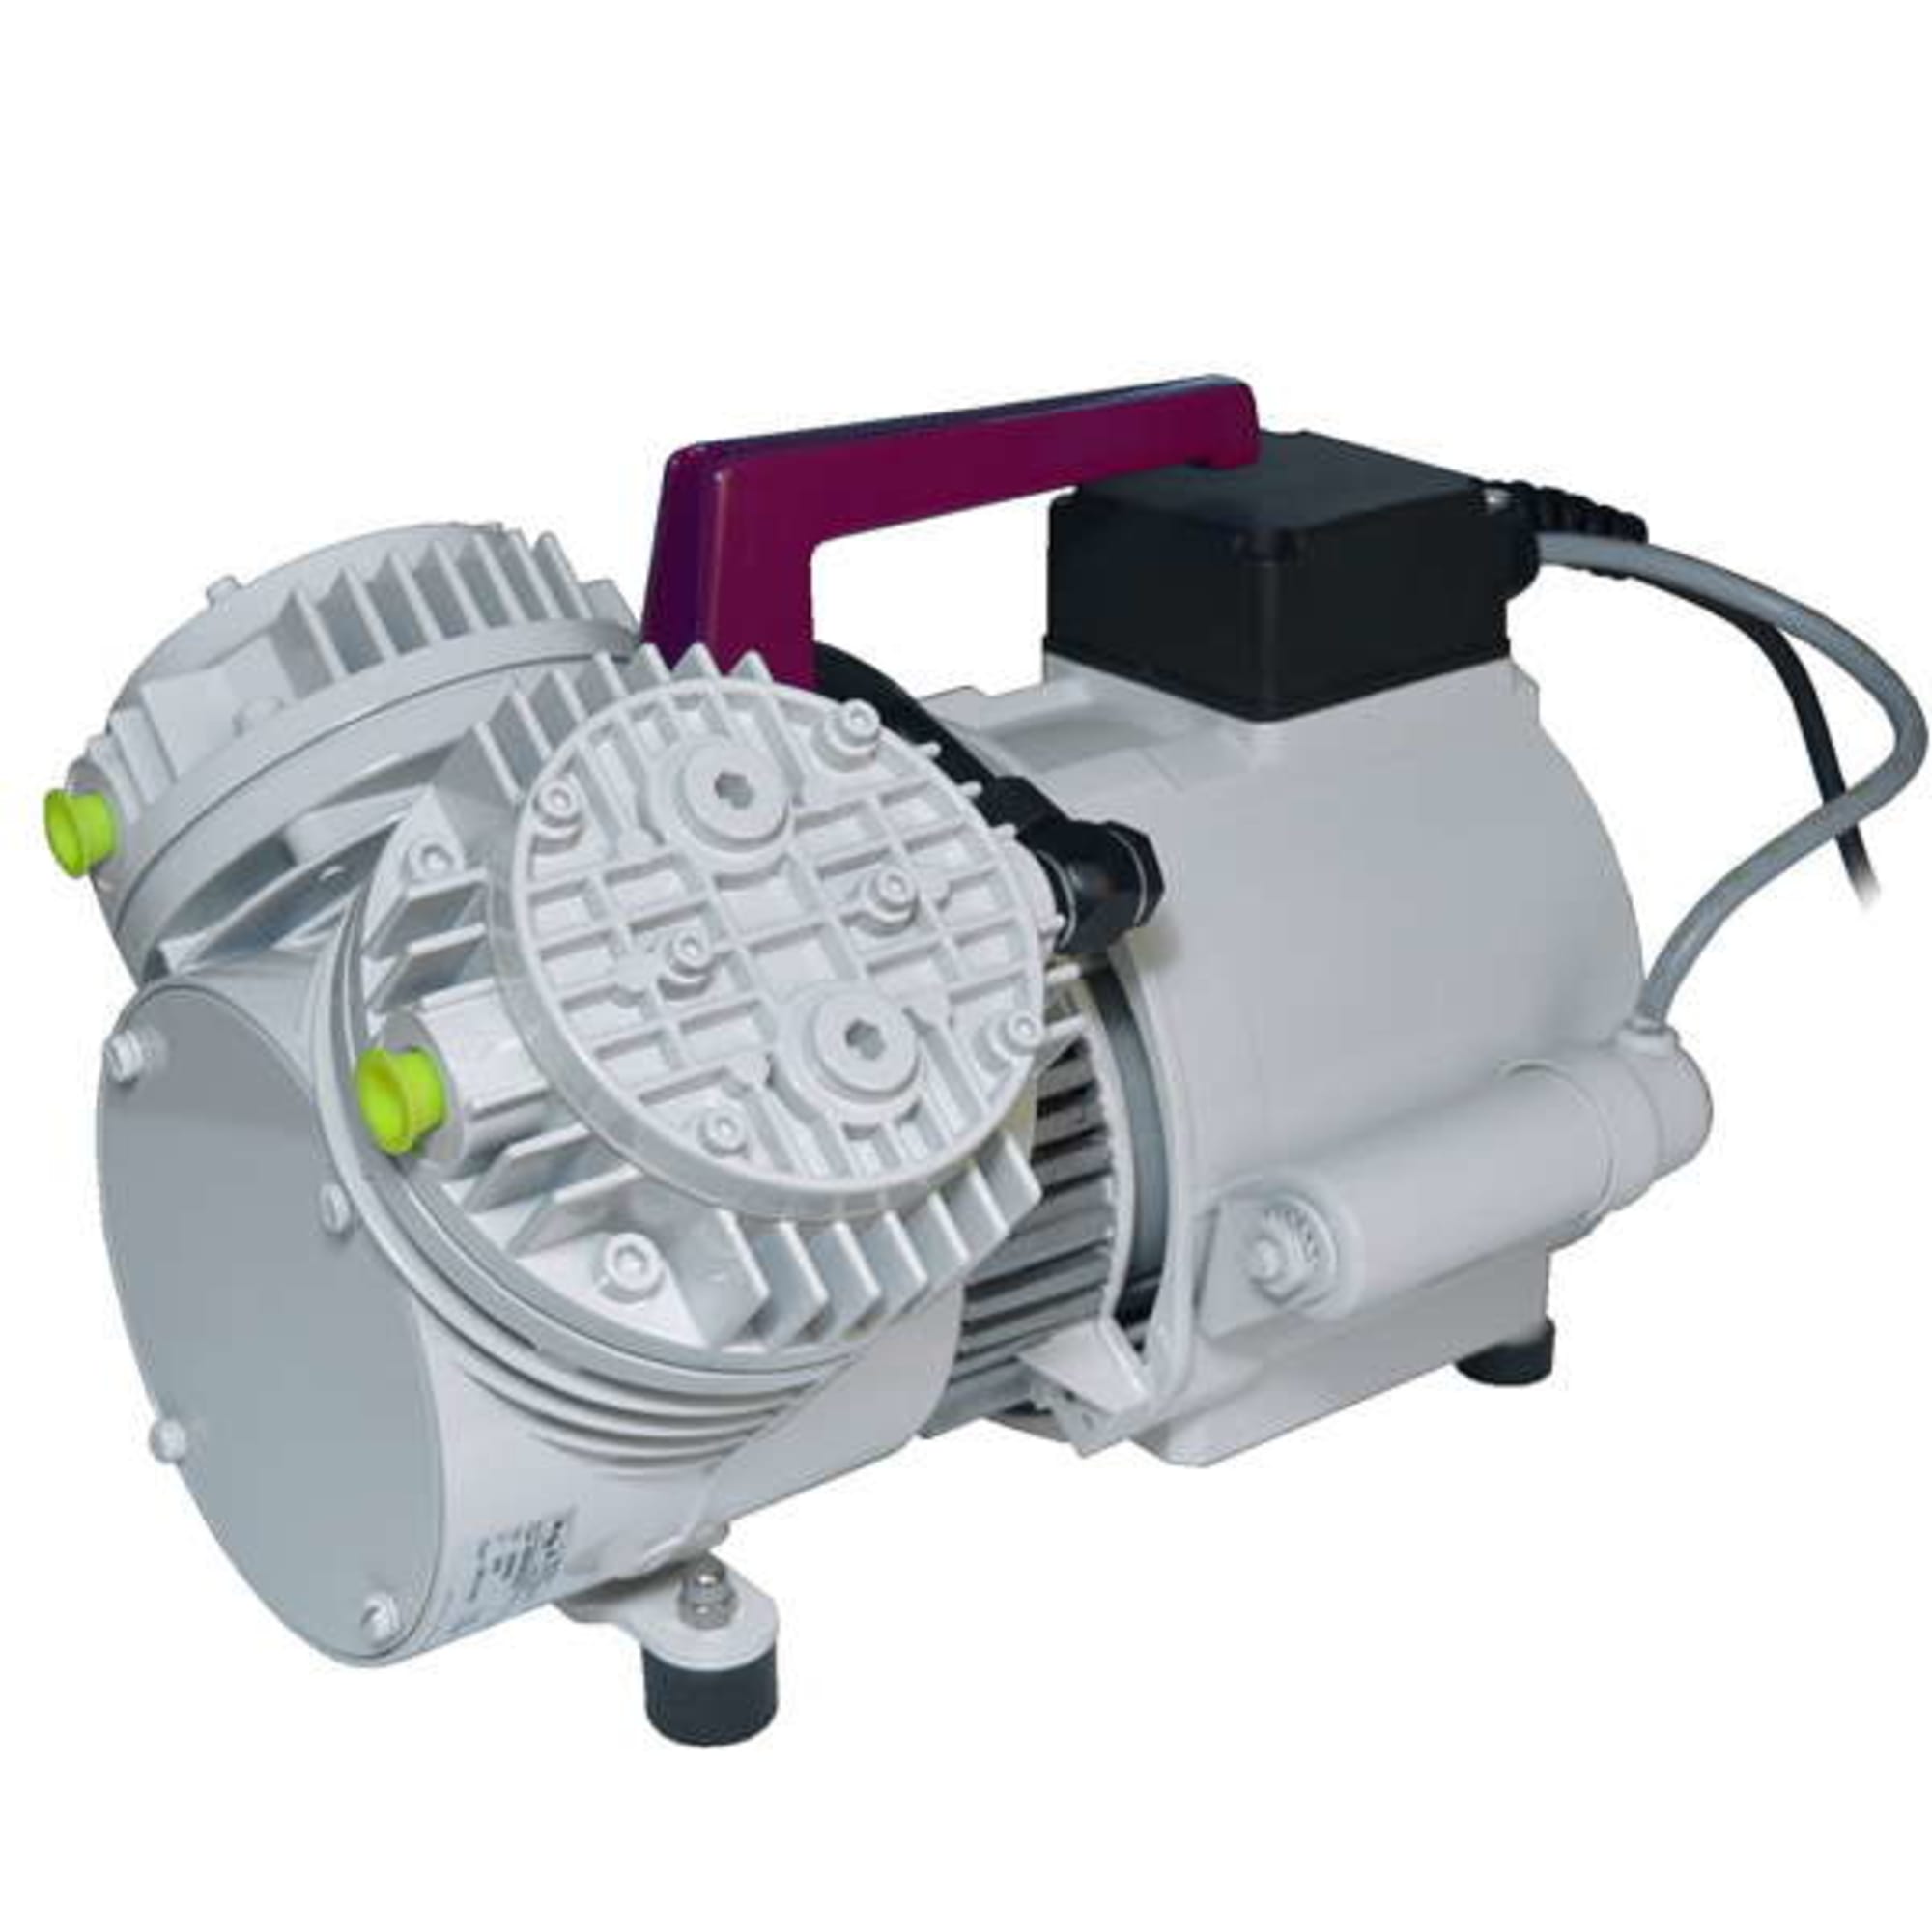 Vacuum pump P3-SPEZIAL (for RI - Resin Infusion), image 5